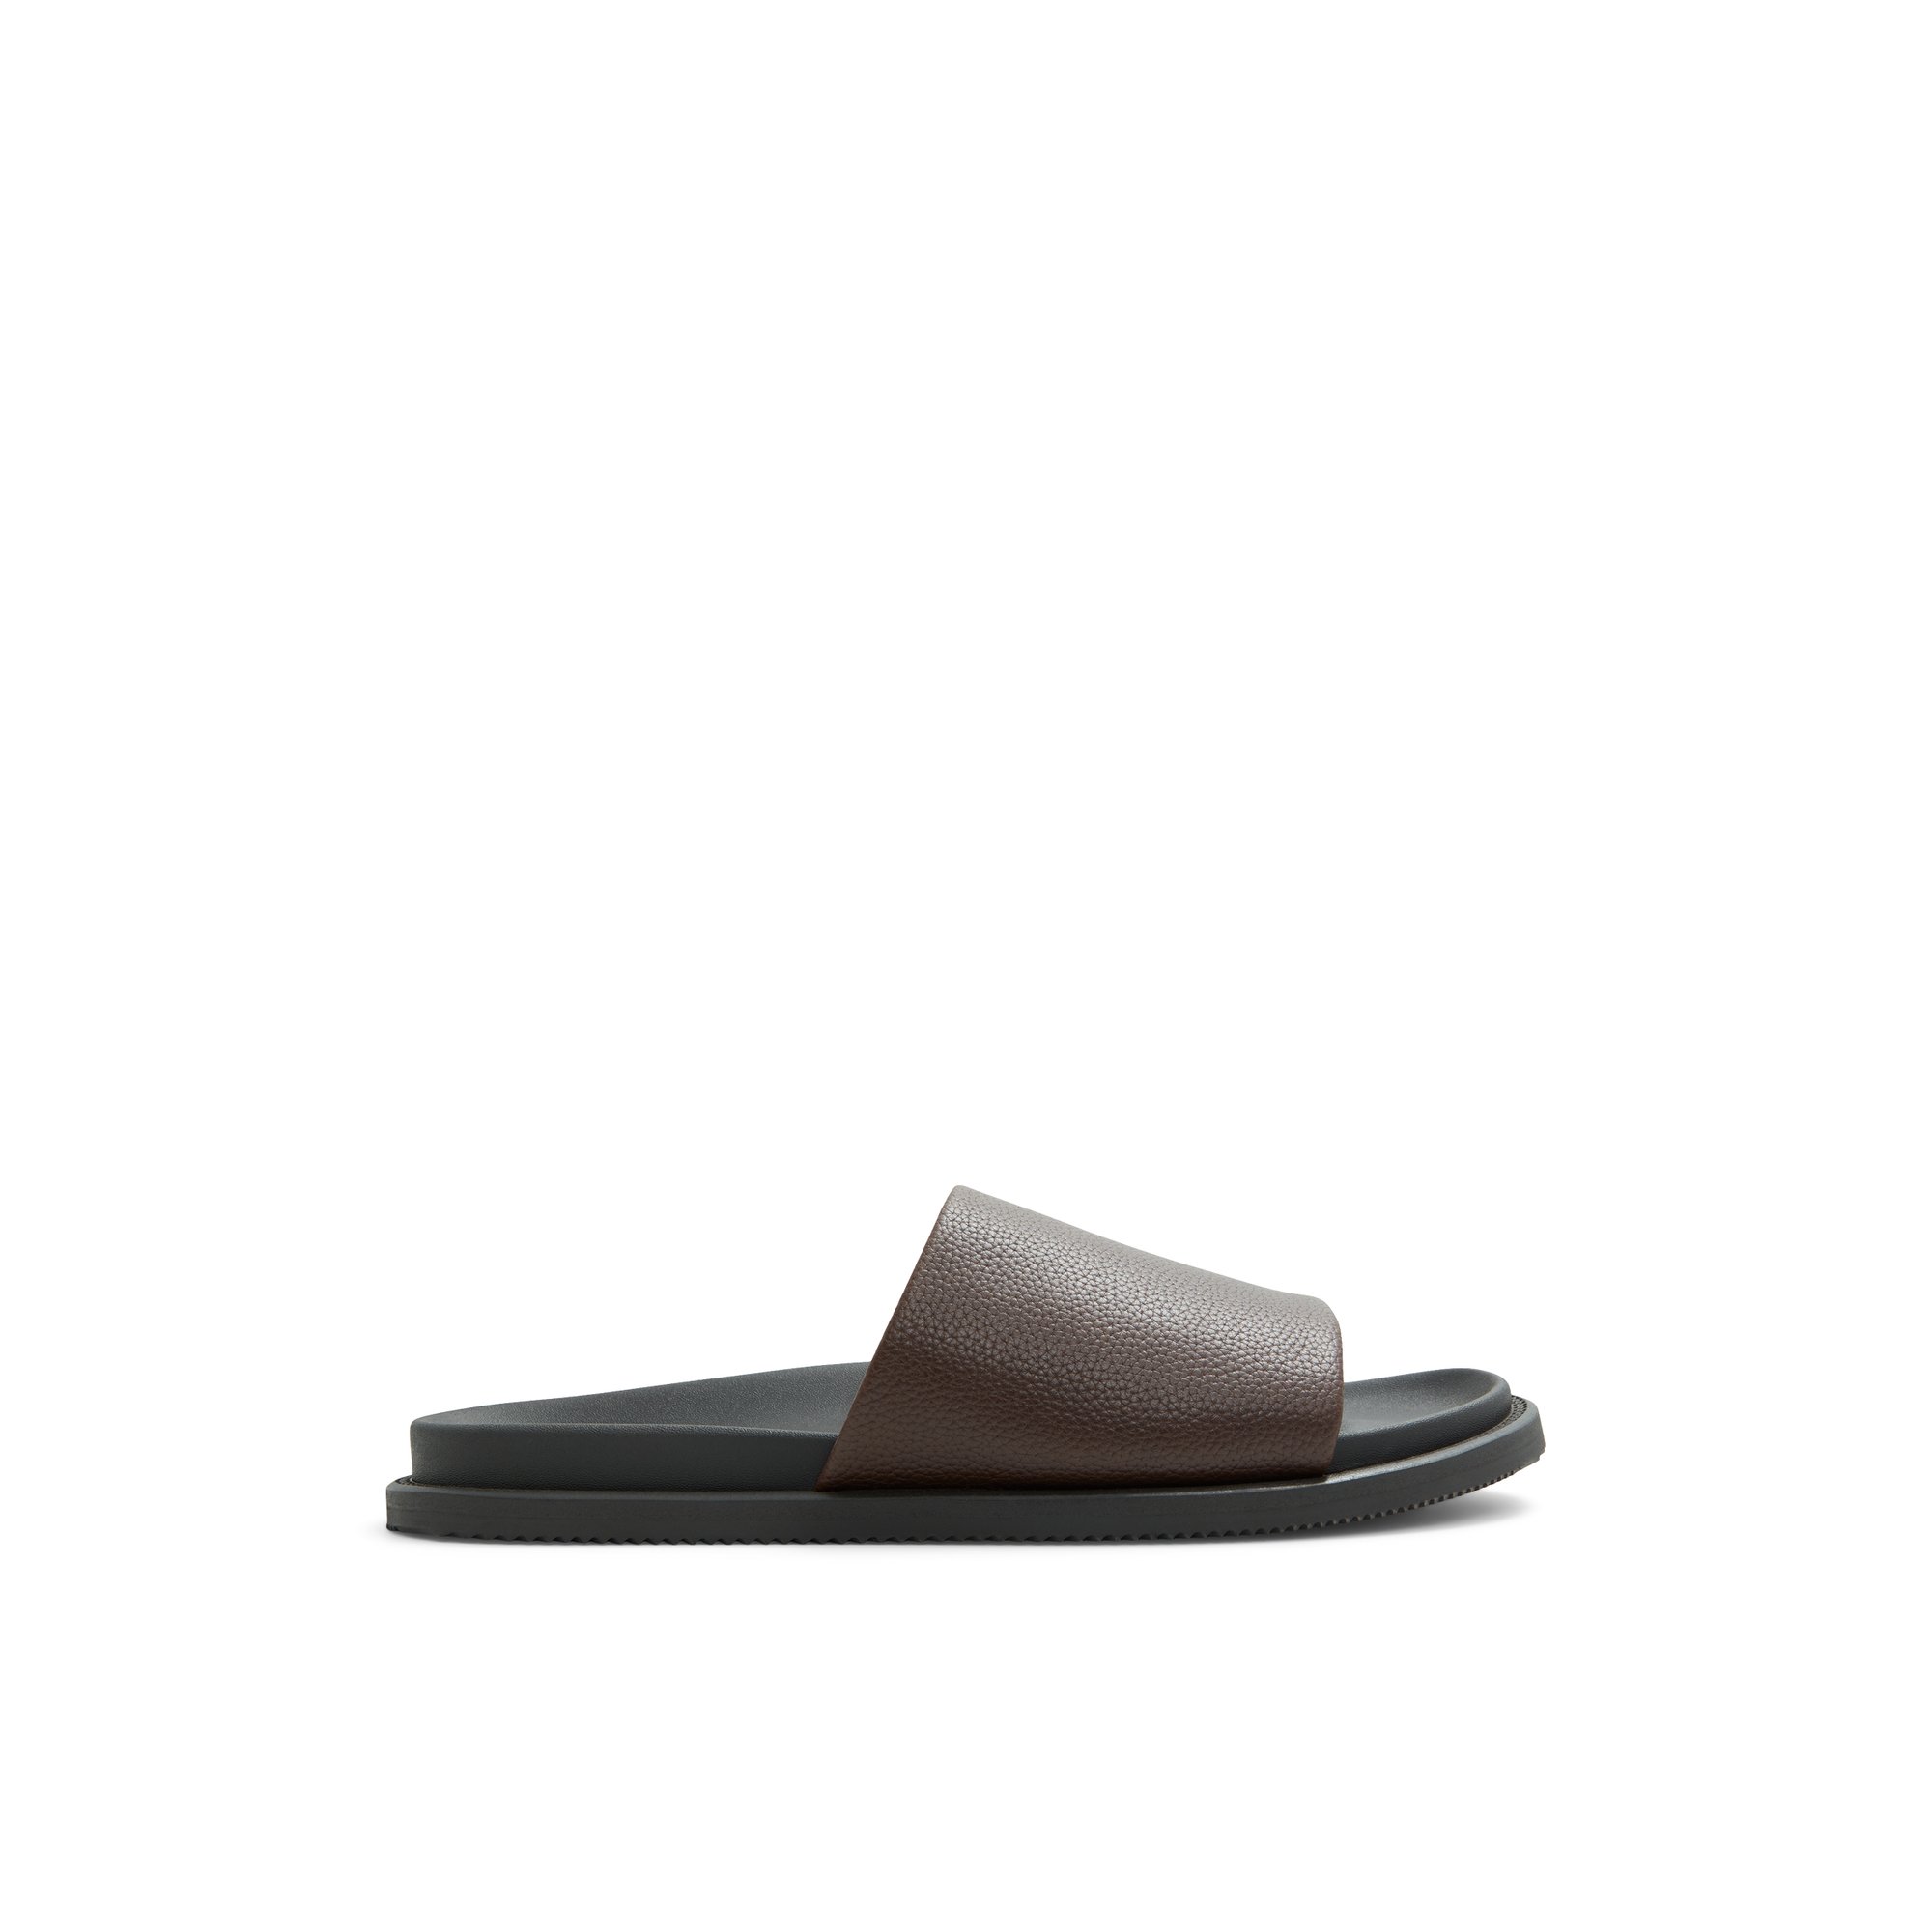 ALDO Gentslide - Men's Sandal - Brown